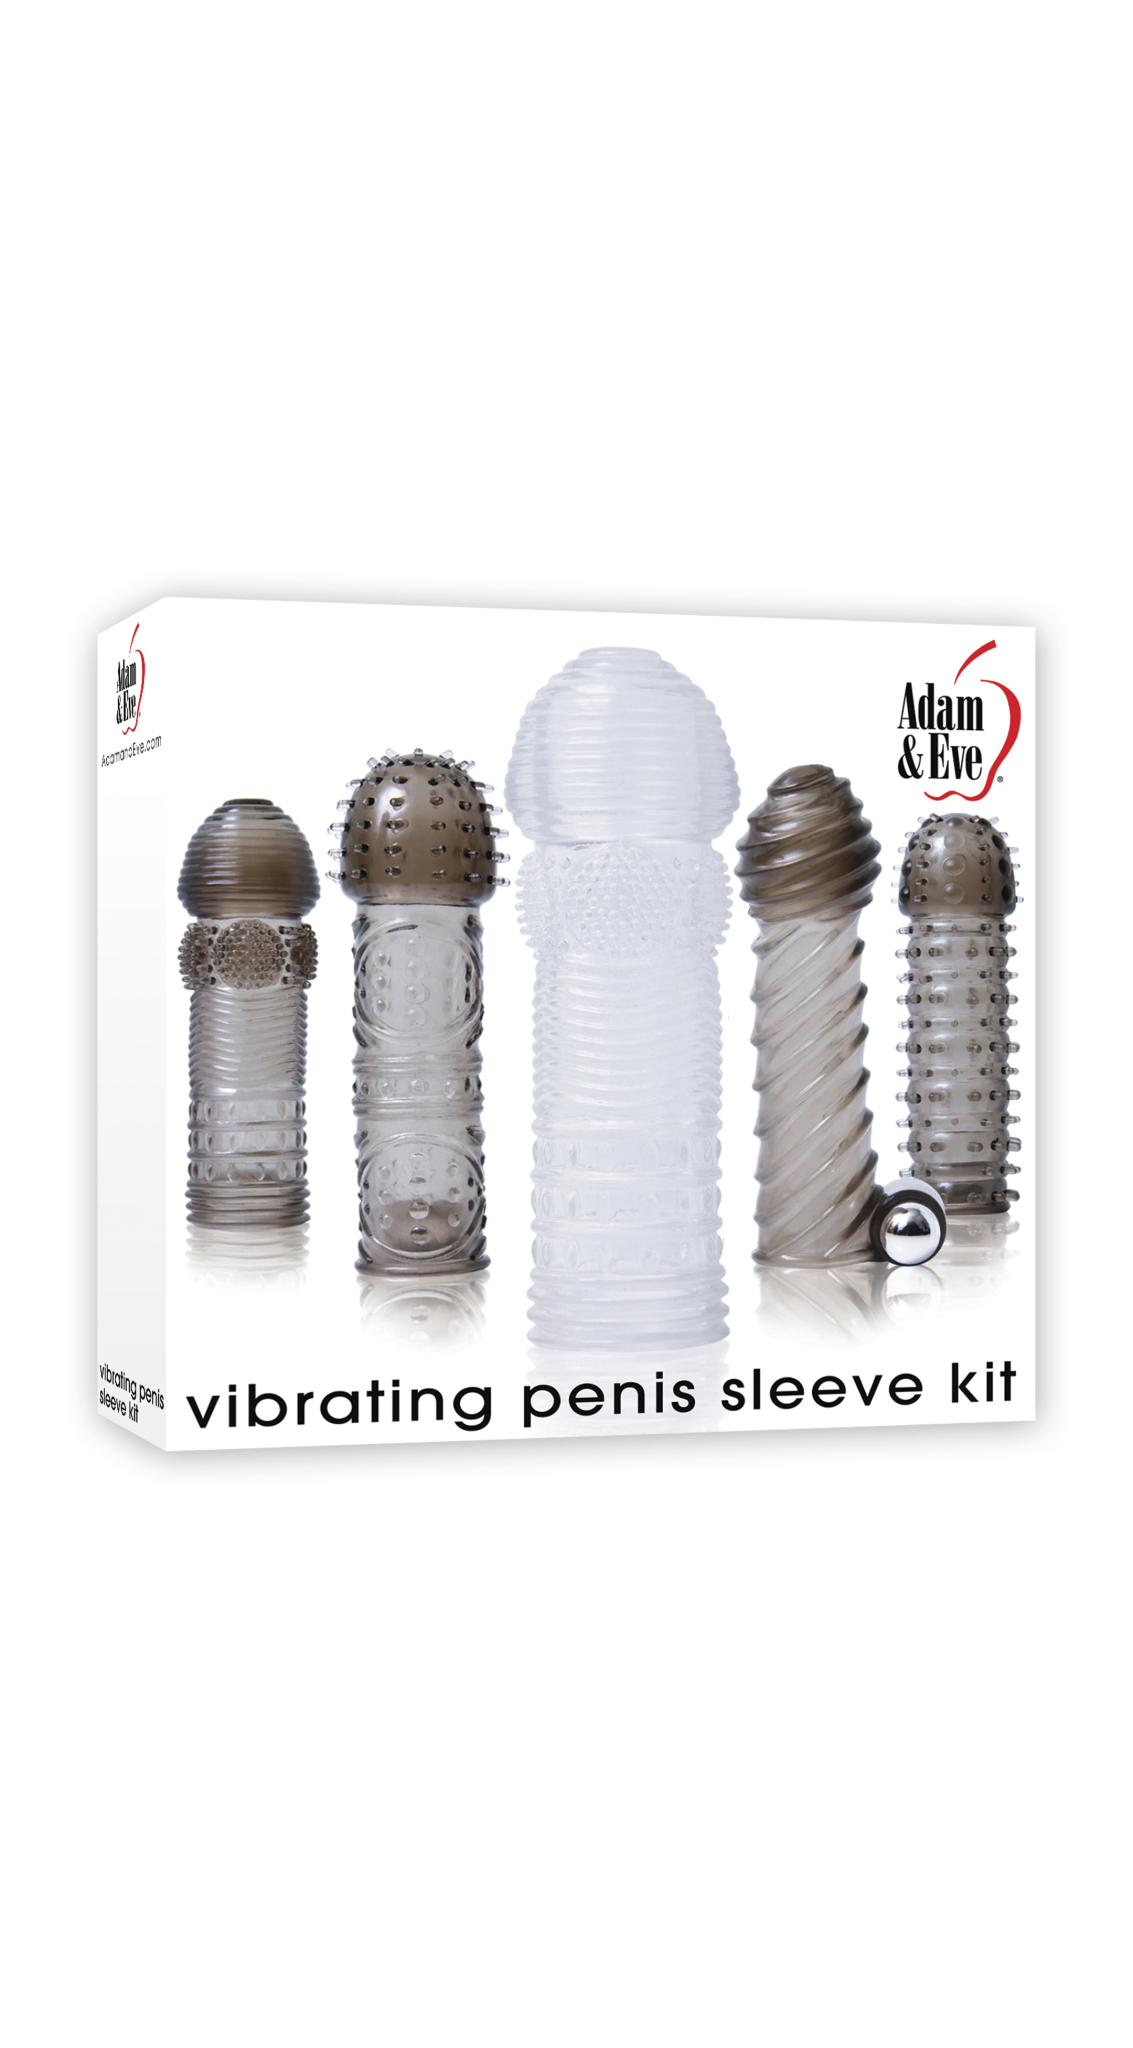 penis-sleeve-kit-mockbox.jpg